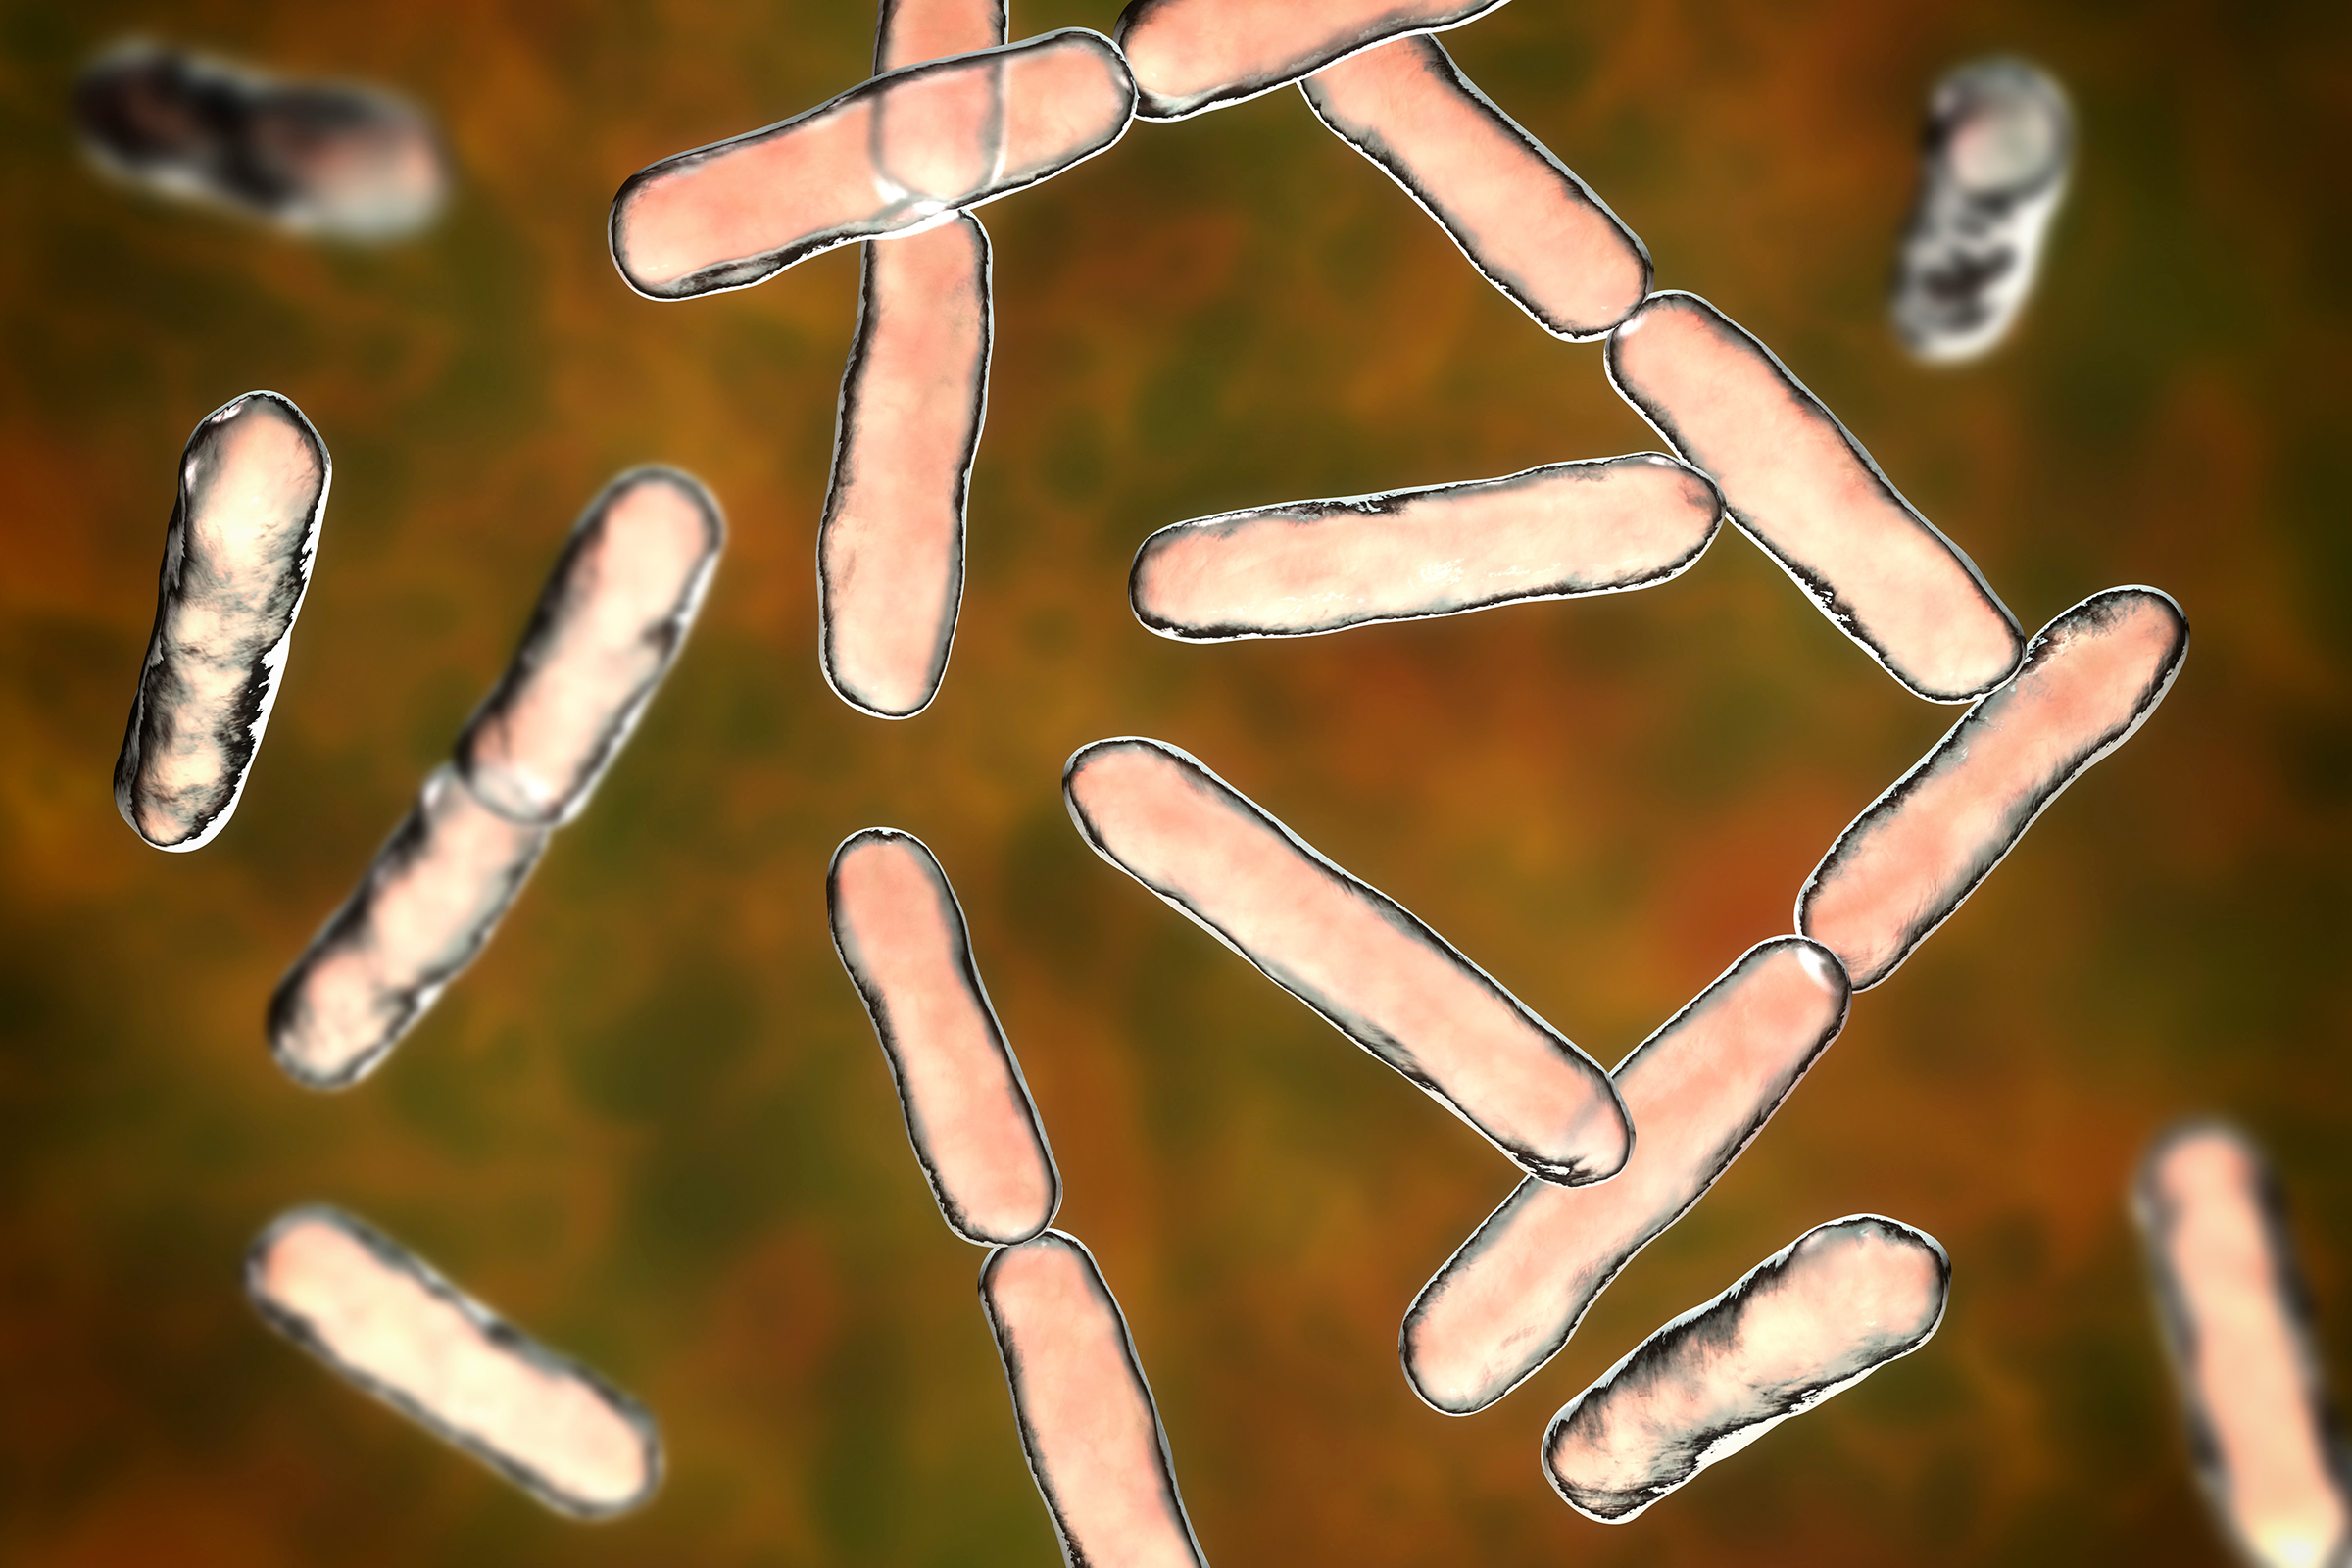 Vi khuẩn Bifidobacteria rất quan trọng đối với khả năng miễn dịch của đường ruột. (Ảnh: Kateryna Kon/Shutterstock)